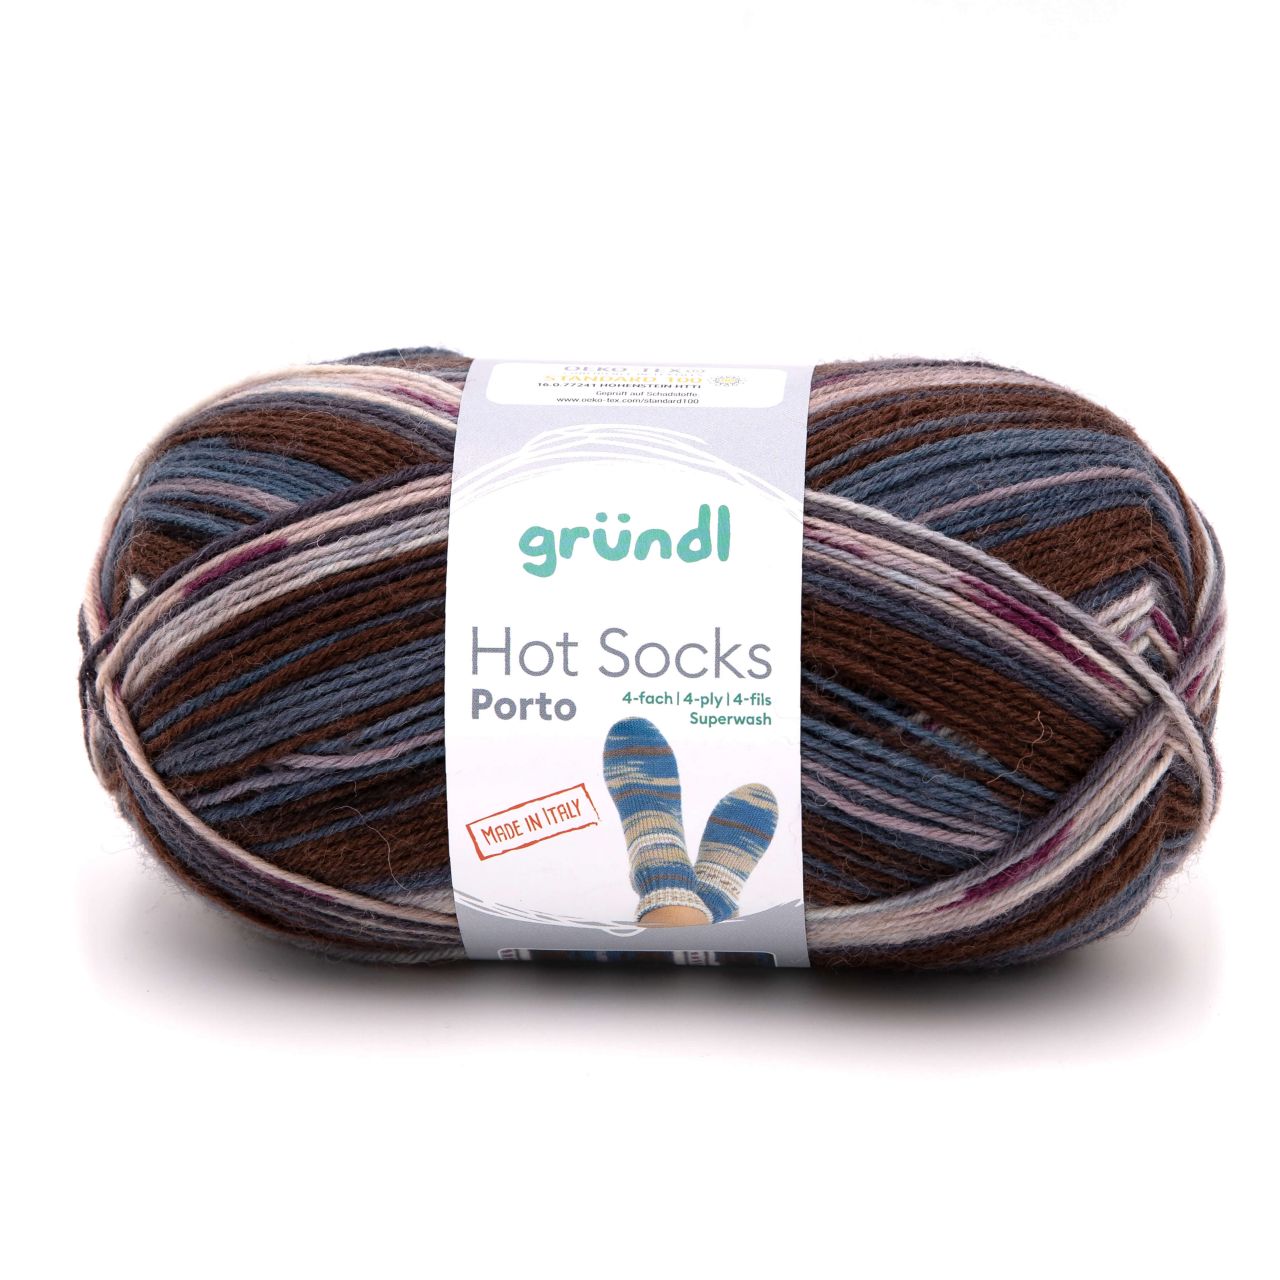 Gründl Sockenwolle Hot Socks Porto 100 g 4-fach braun-natur-denim-flieder von gründl